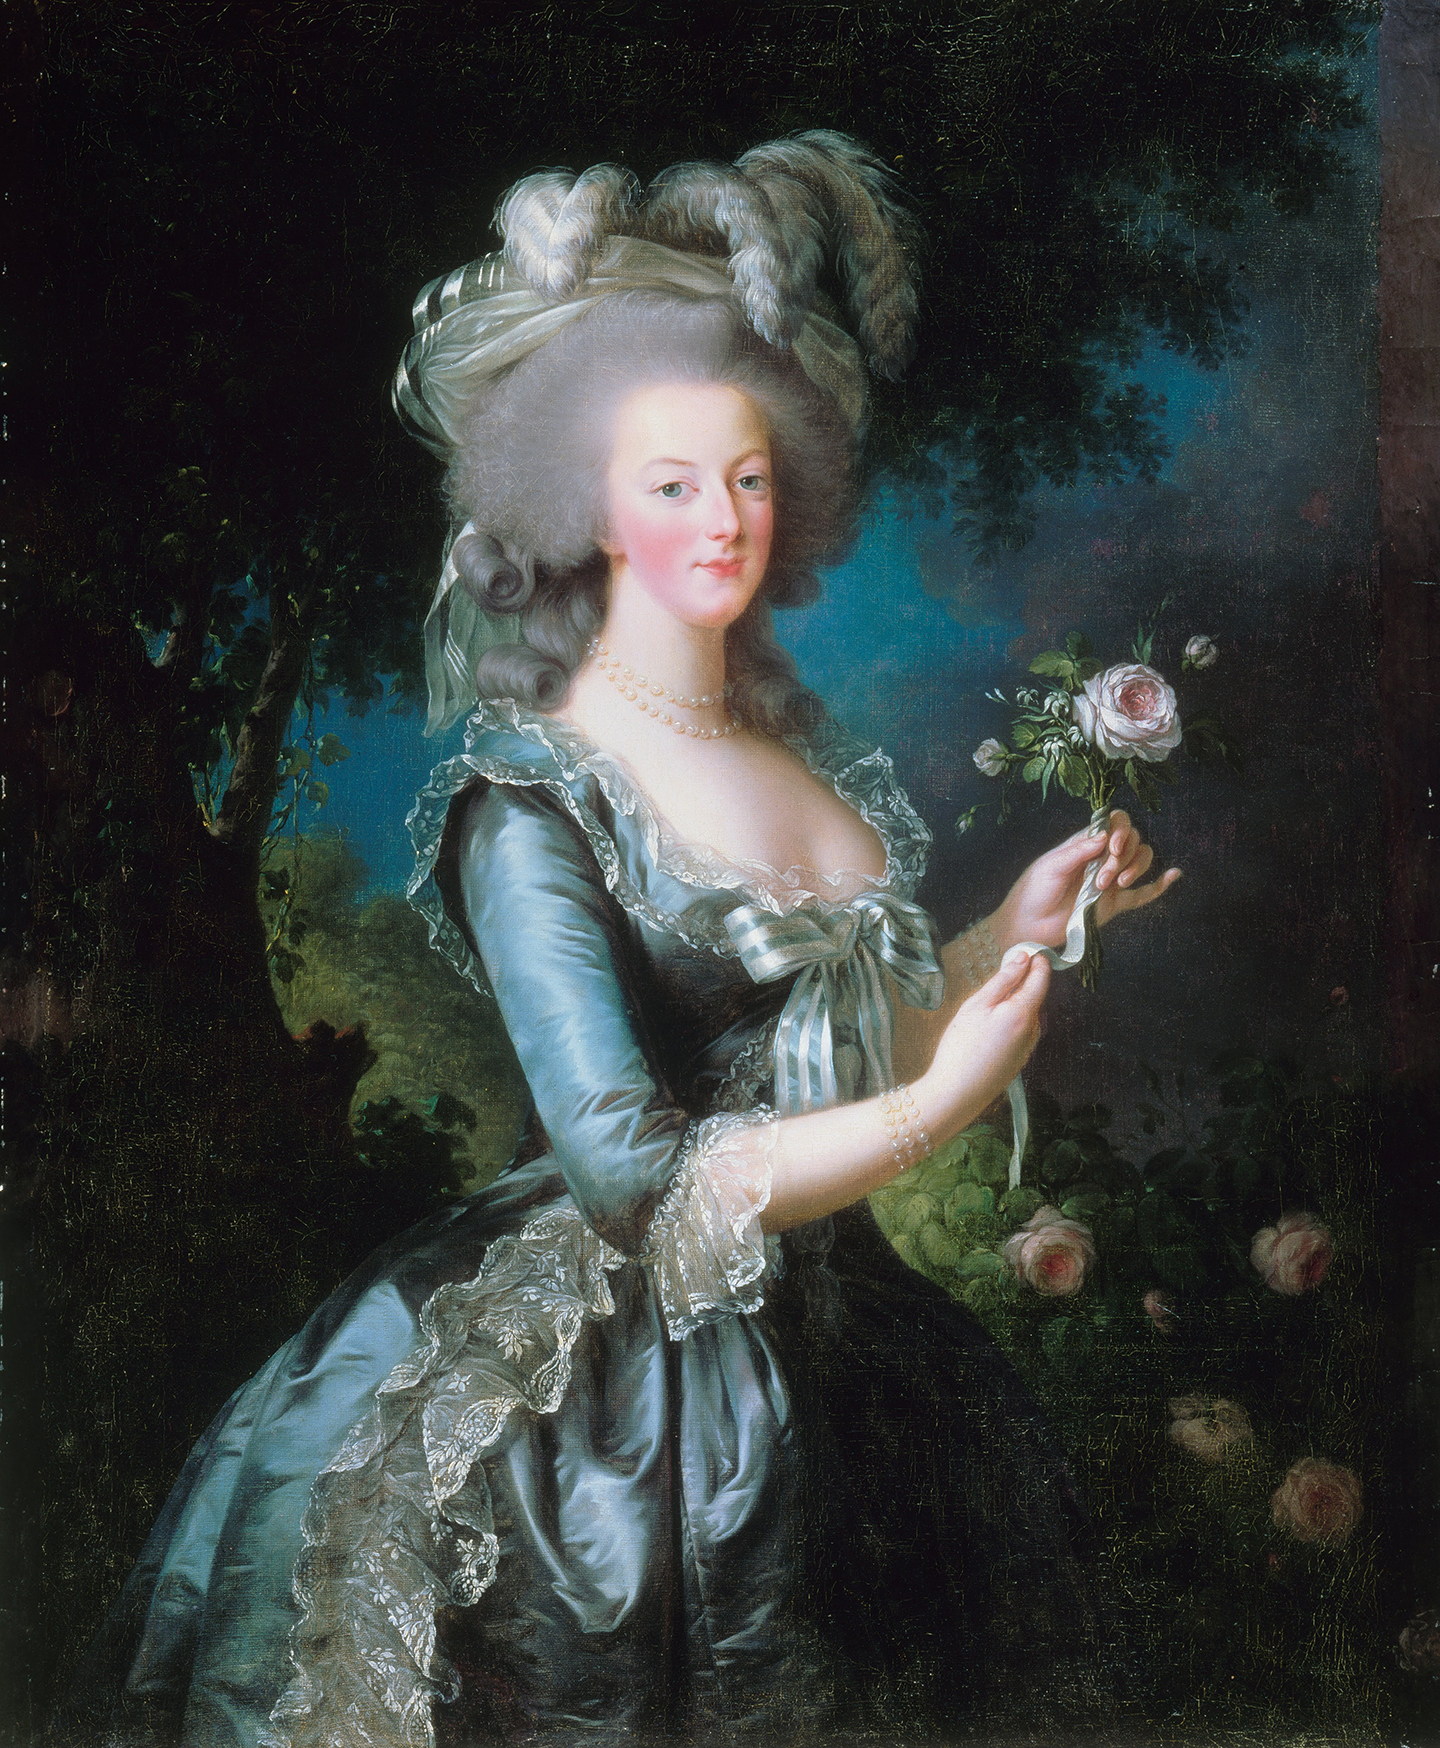 Bức tranh “Marie Antoinette With a Rose” (Nữ hoàng Marie Antoinette cùng một đóa hồng) của họa sĩ Élisabeth-Louise Vigée Le Brun, năm 1783. Tranh sơn dầu trên vải canvas. Cung điện Versailles, Pháp quốc. (Ảnh: Tài liệu công cộng)